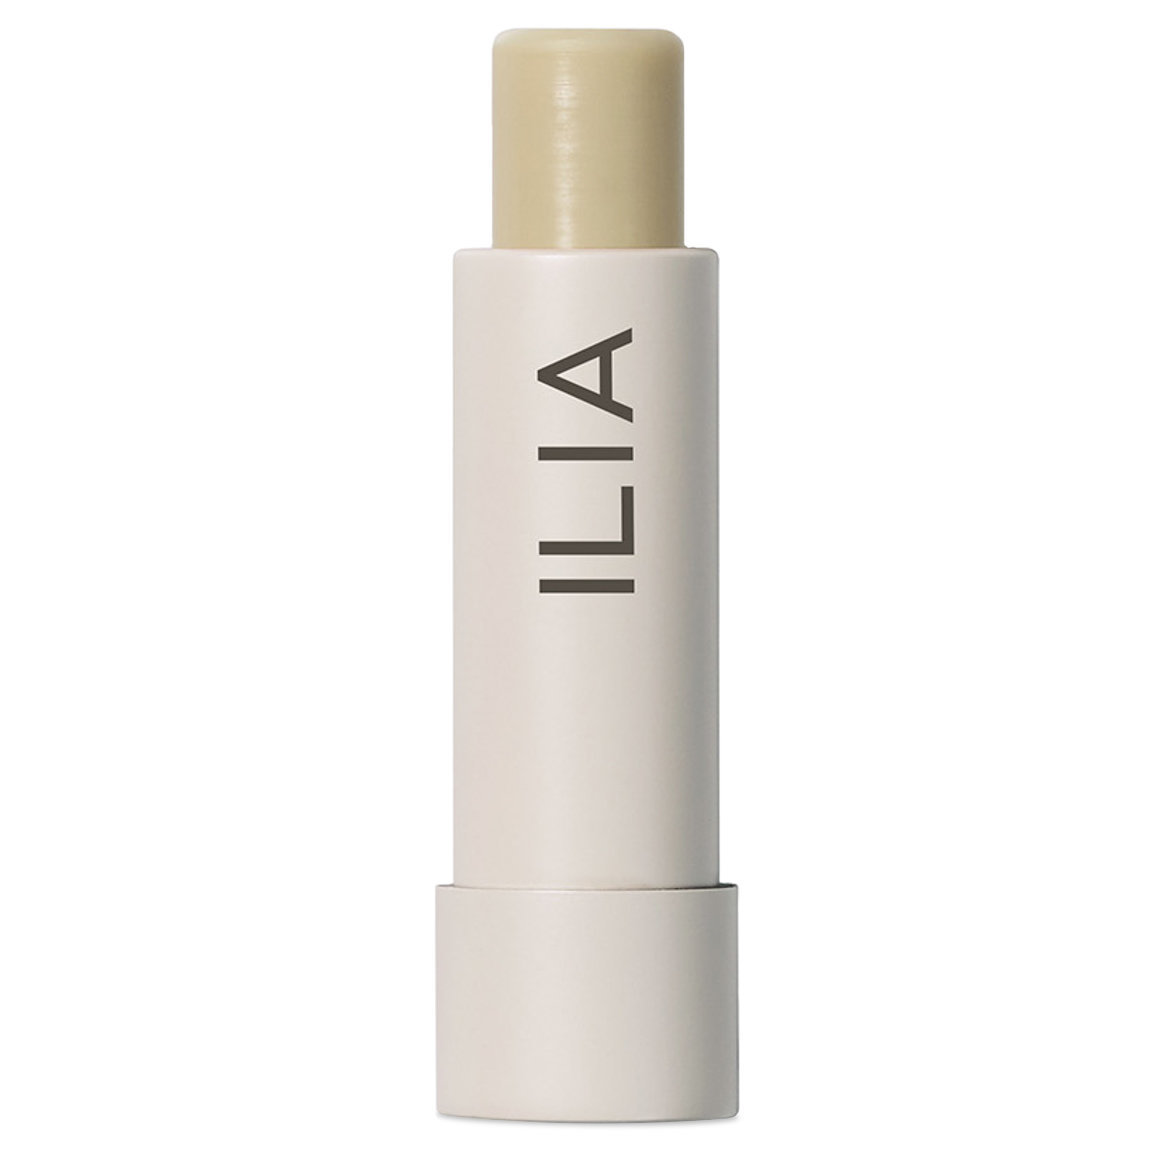 ILIA Balmy Days Lip Conditioner alternative view 1.